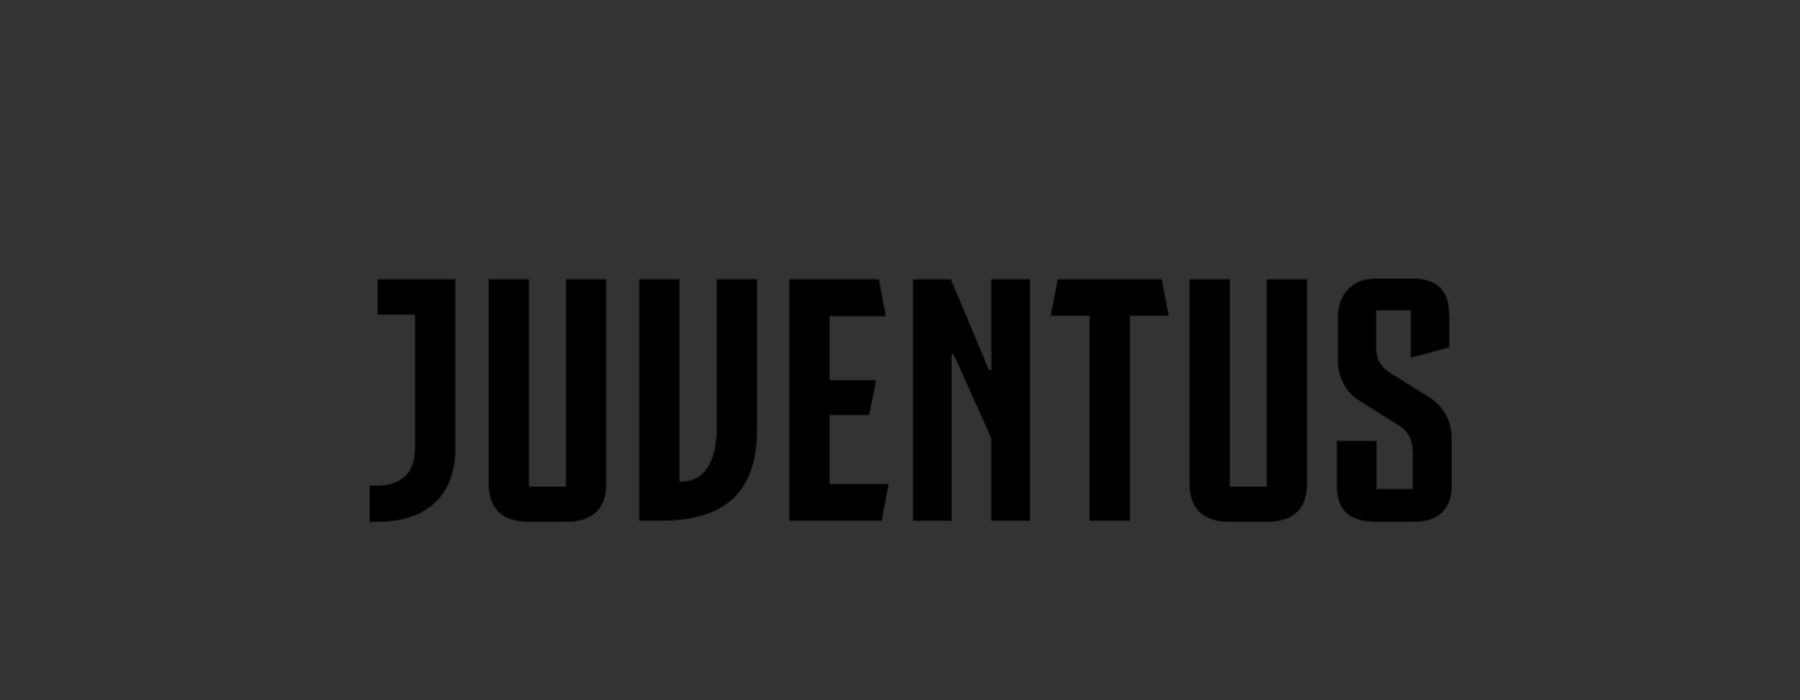 Juventus_logo